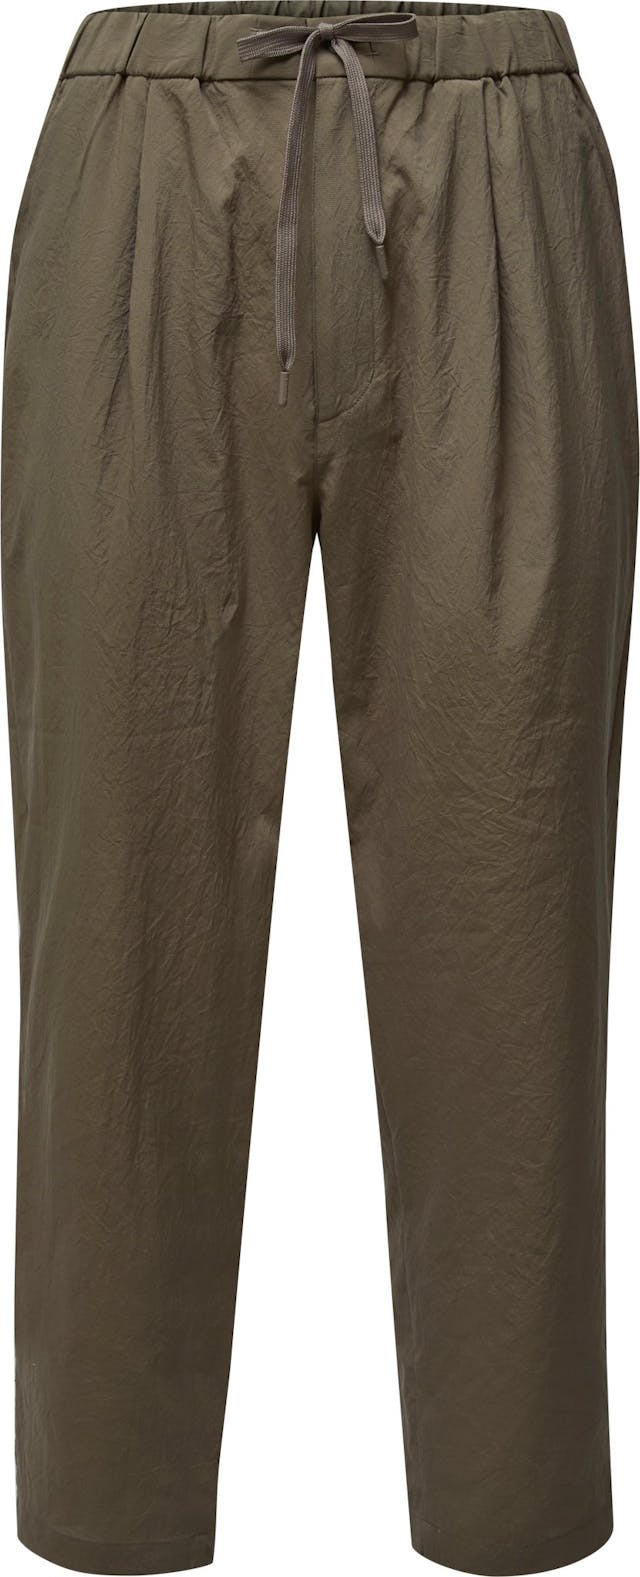 Image de produit pour Pantalon Quick Dry - Homme